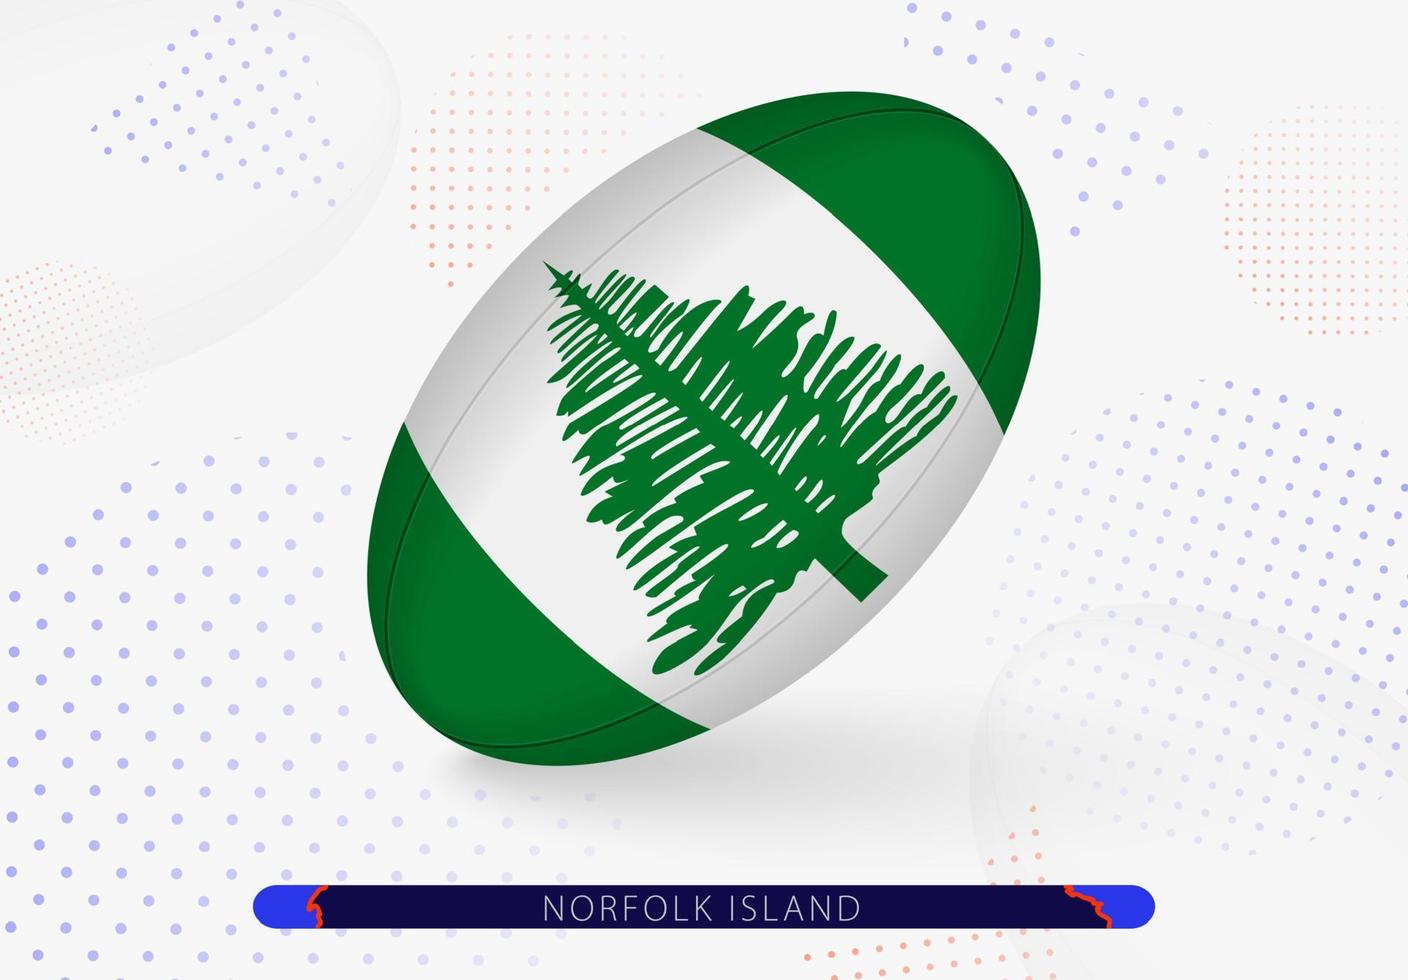 ballon de rugby avec le drapeau de l'île norfolk dessus. équipement pour l'équipe de rugby de l'île norfolk. vecteur